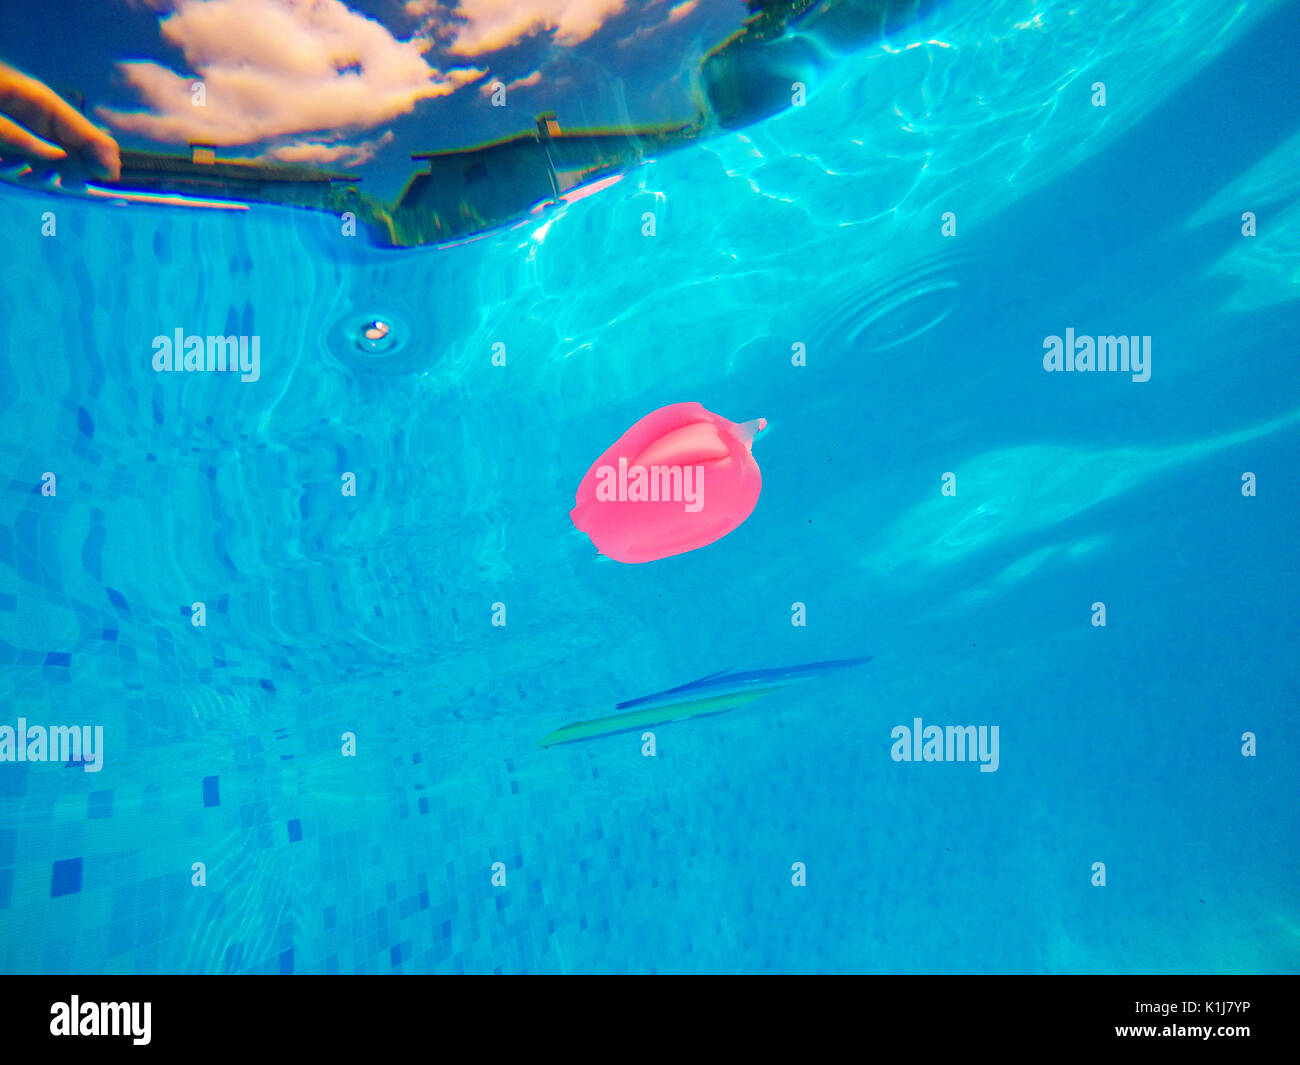 Juguete de goma genérico peces flotando en la piscina, las actividades realizadas durante el verano y disfrute, vista submarina Foto de stock